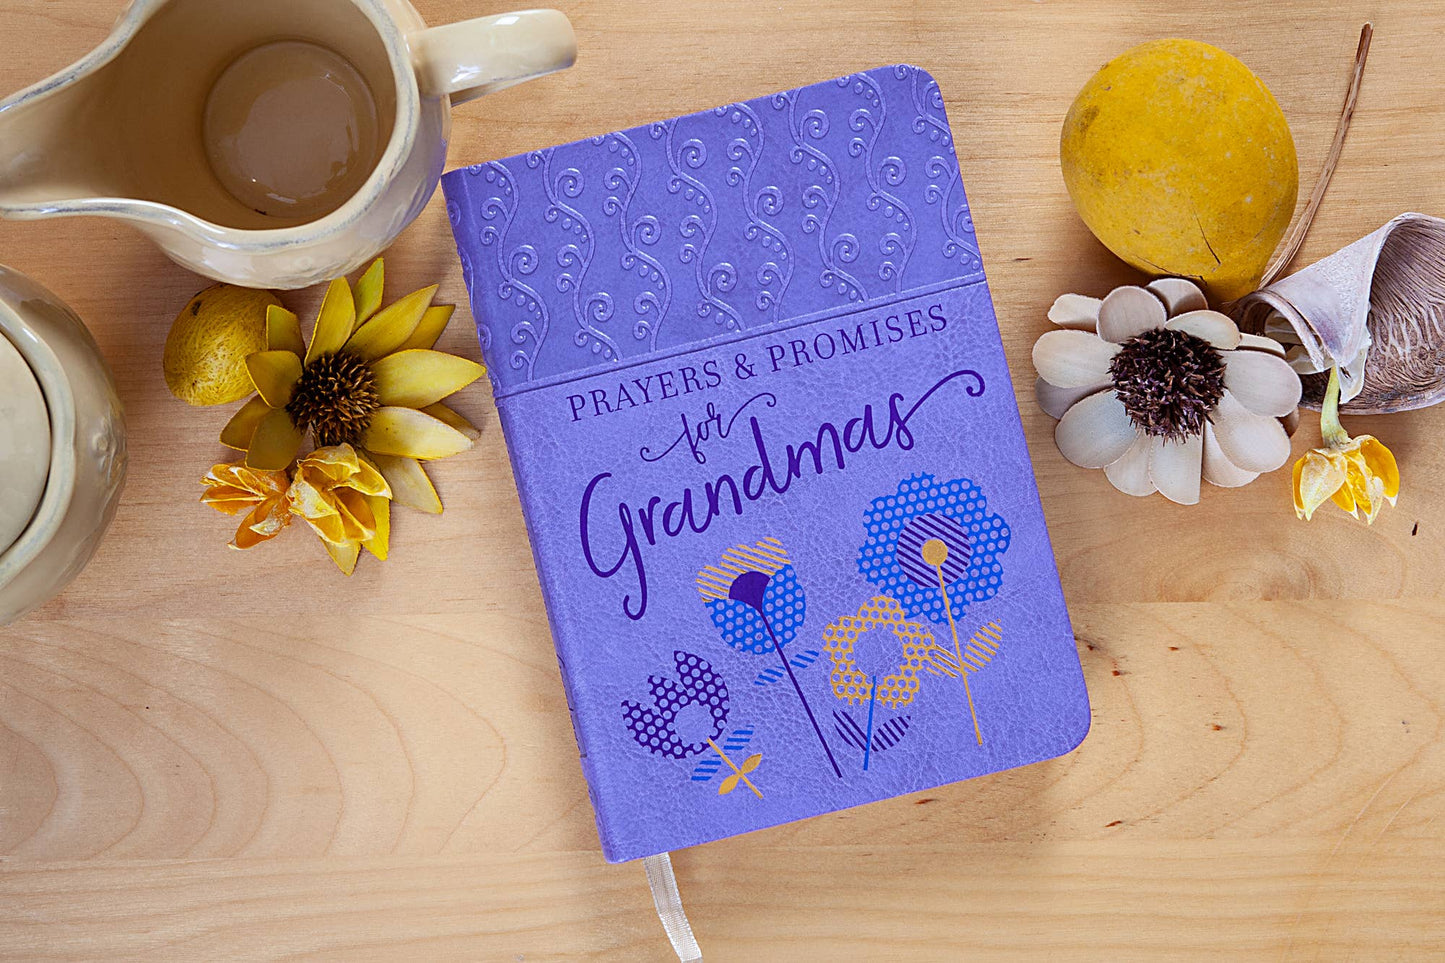 Prayers & Promises for Grandmas (Prayer Devotional)